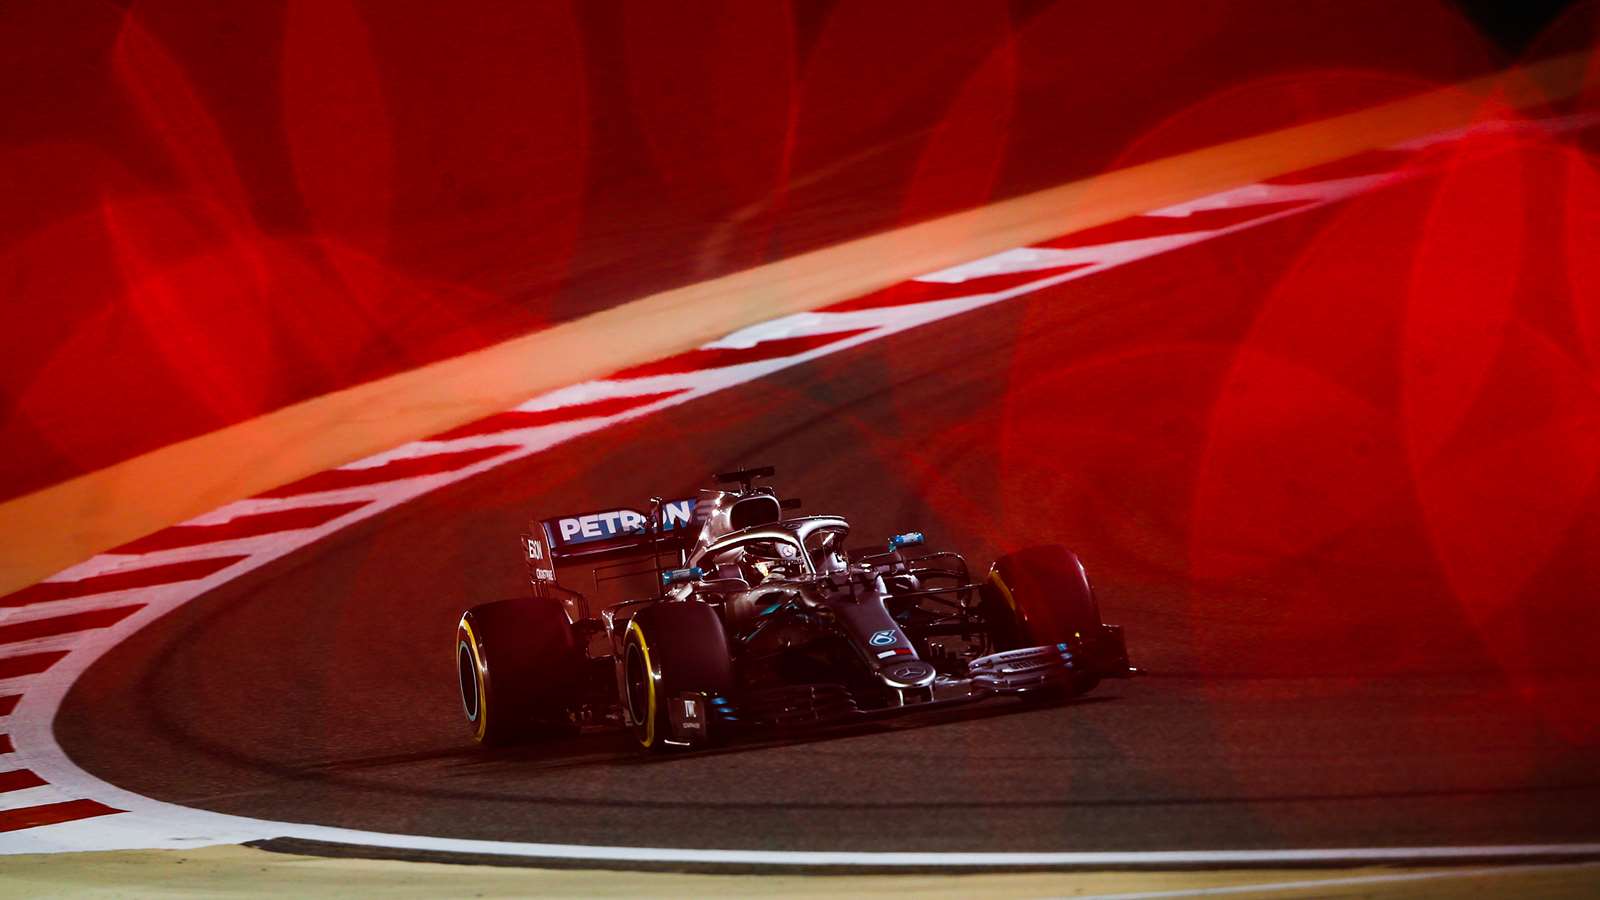 Will Lewis Hamilton drive for Ferrari in 2021?